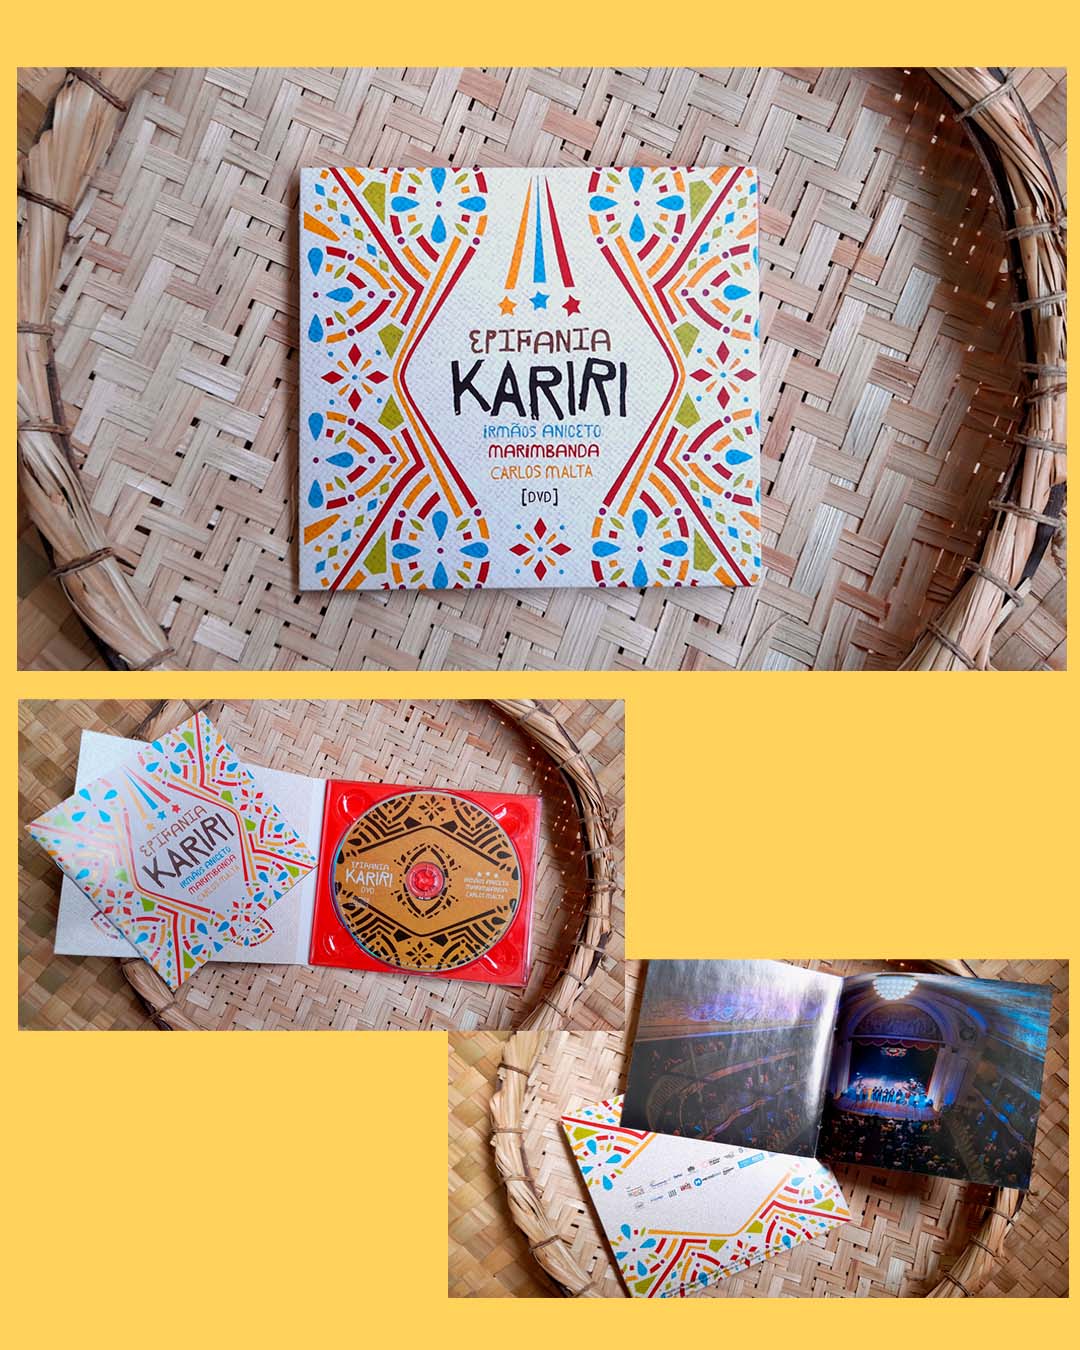 Fotos do encarte do DVD Epifania Kariri sobre uma cesta de palha. O miolo do encarte é vermelho e o disco é permeado de grafismos pretos sobre fundo terroso.